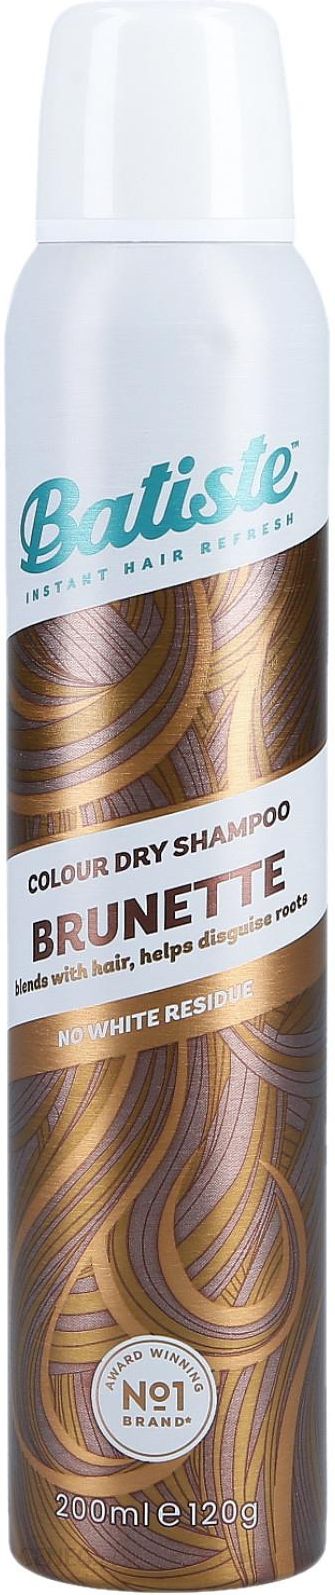 suchy szampon brunette